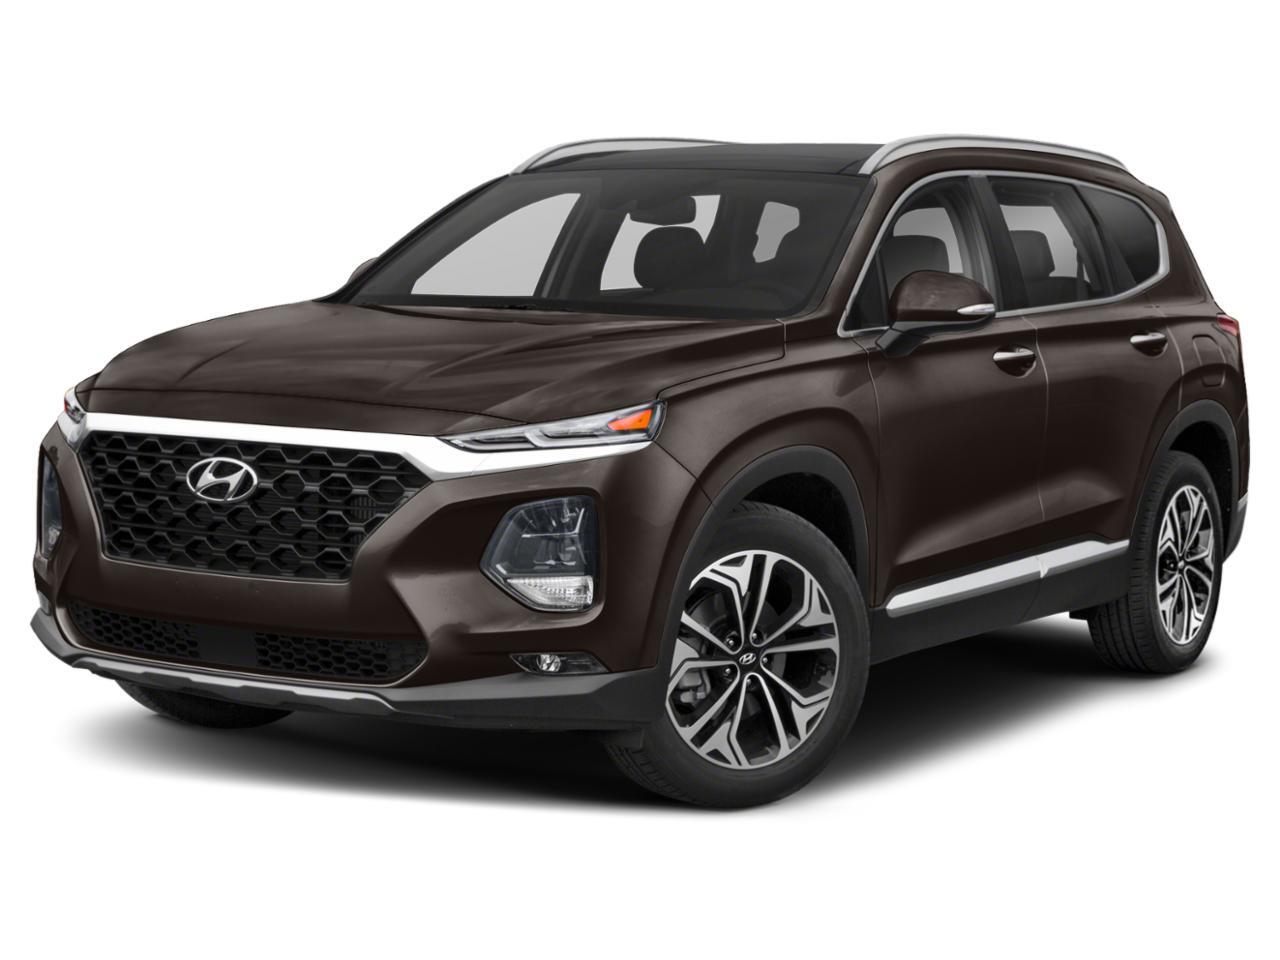 2019 Hyundai Santa Fe 2.0T Ultimate AWD